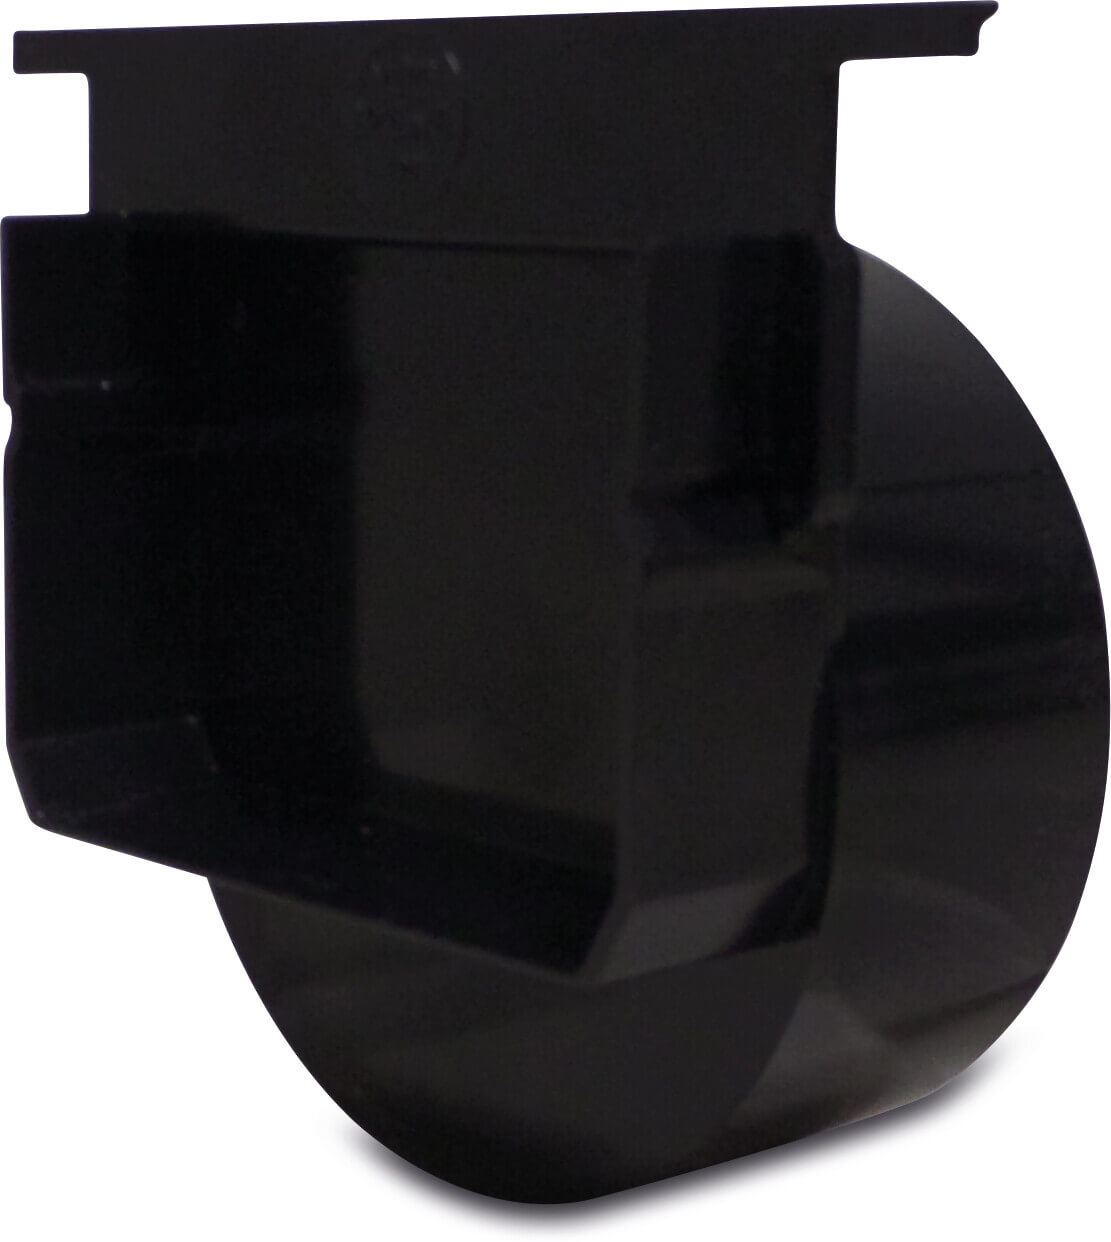 Aanzet / eindstuk PVC-U 110 mm lijmspie zwart type met stalen rooster